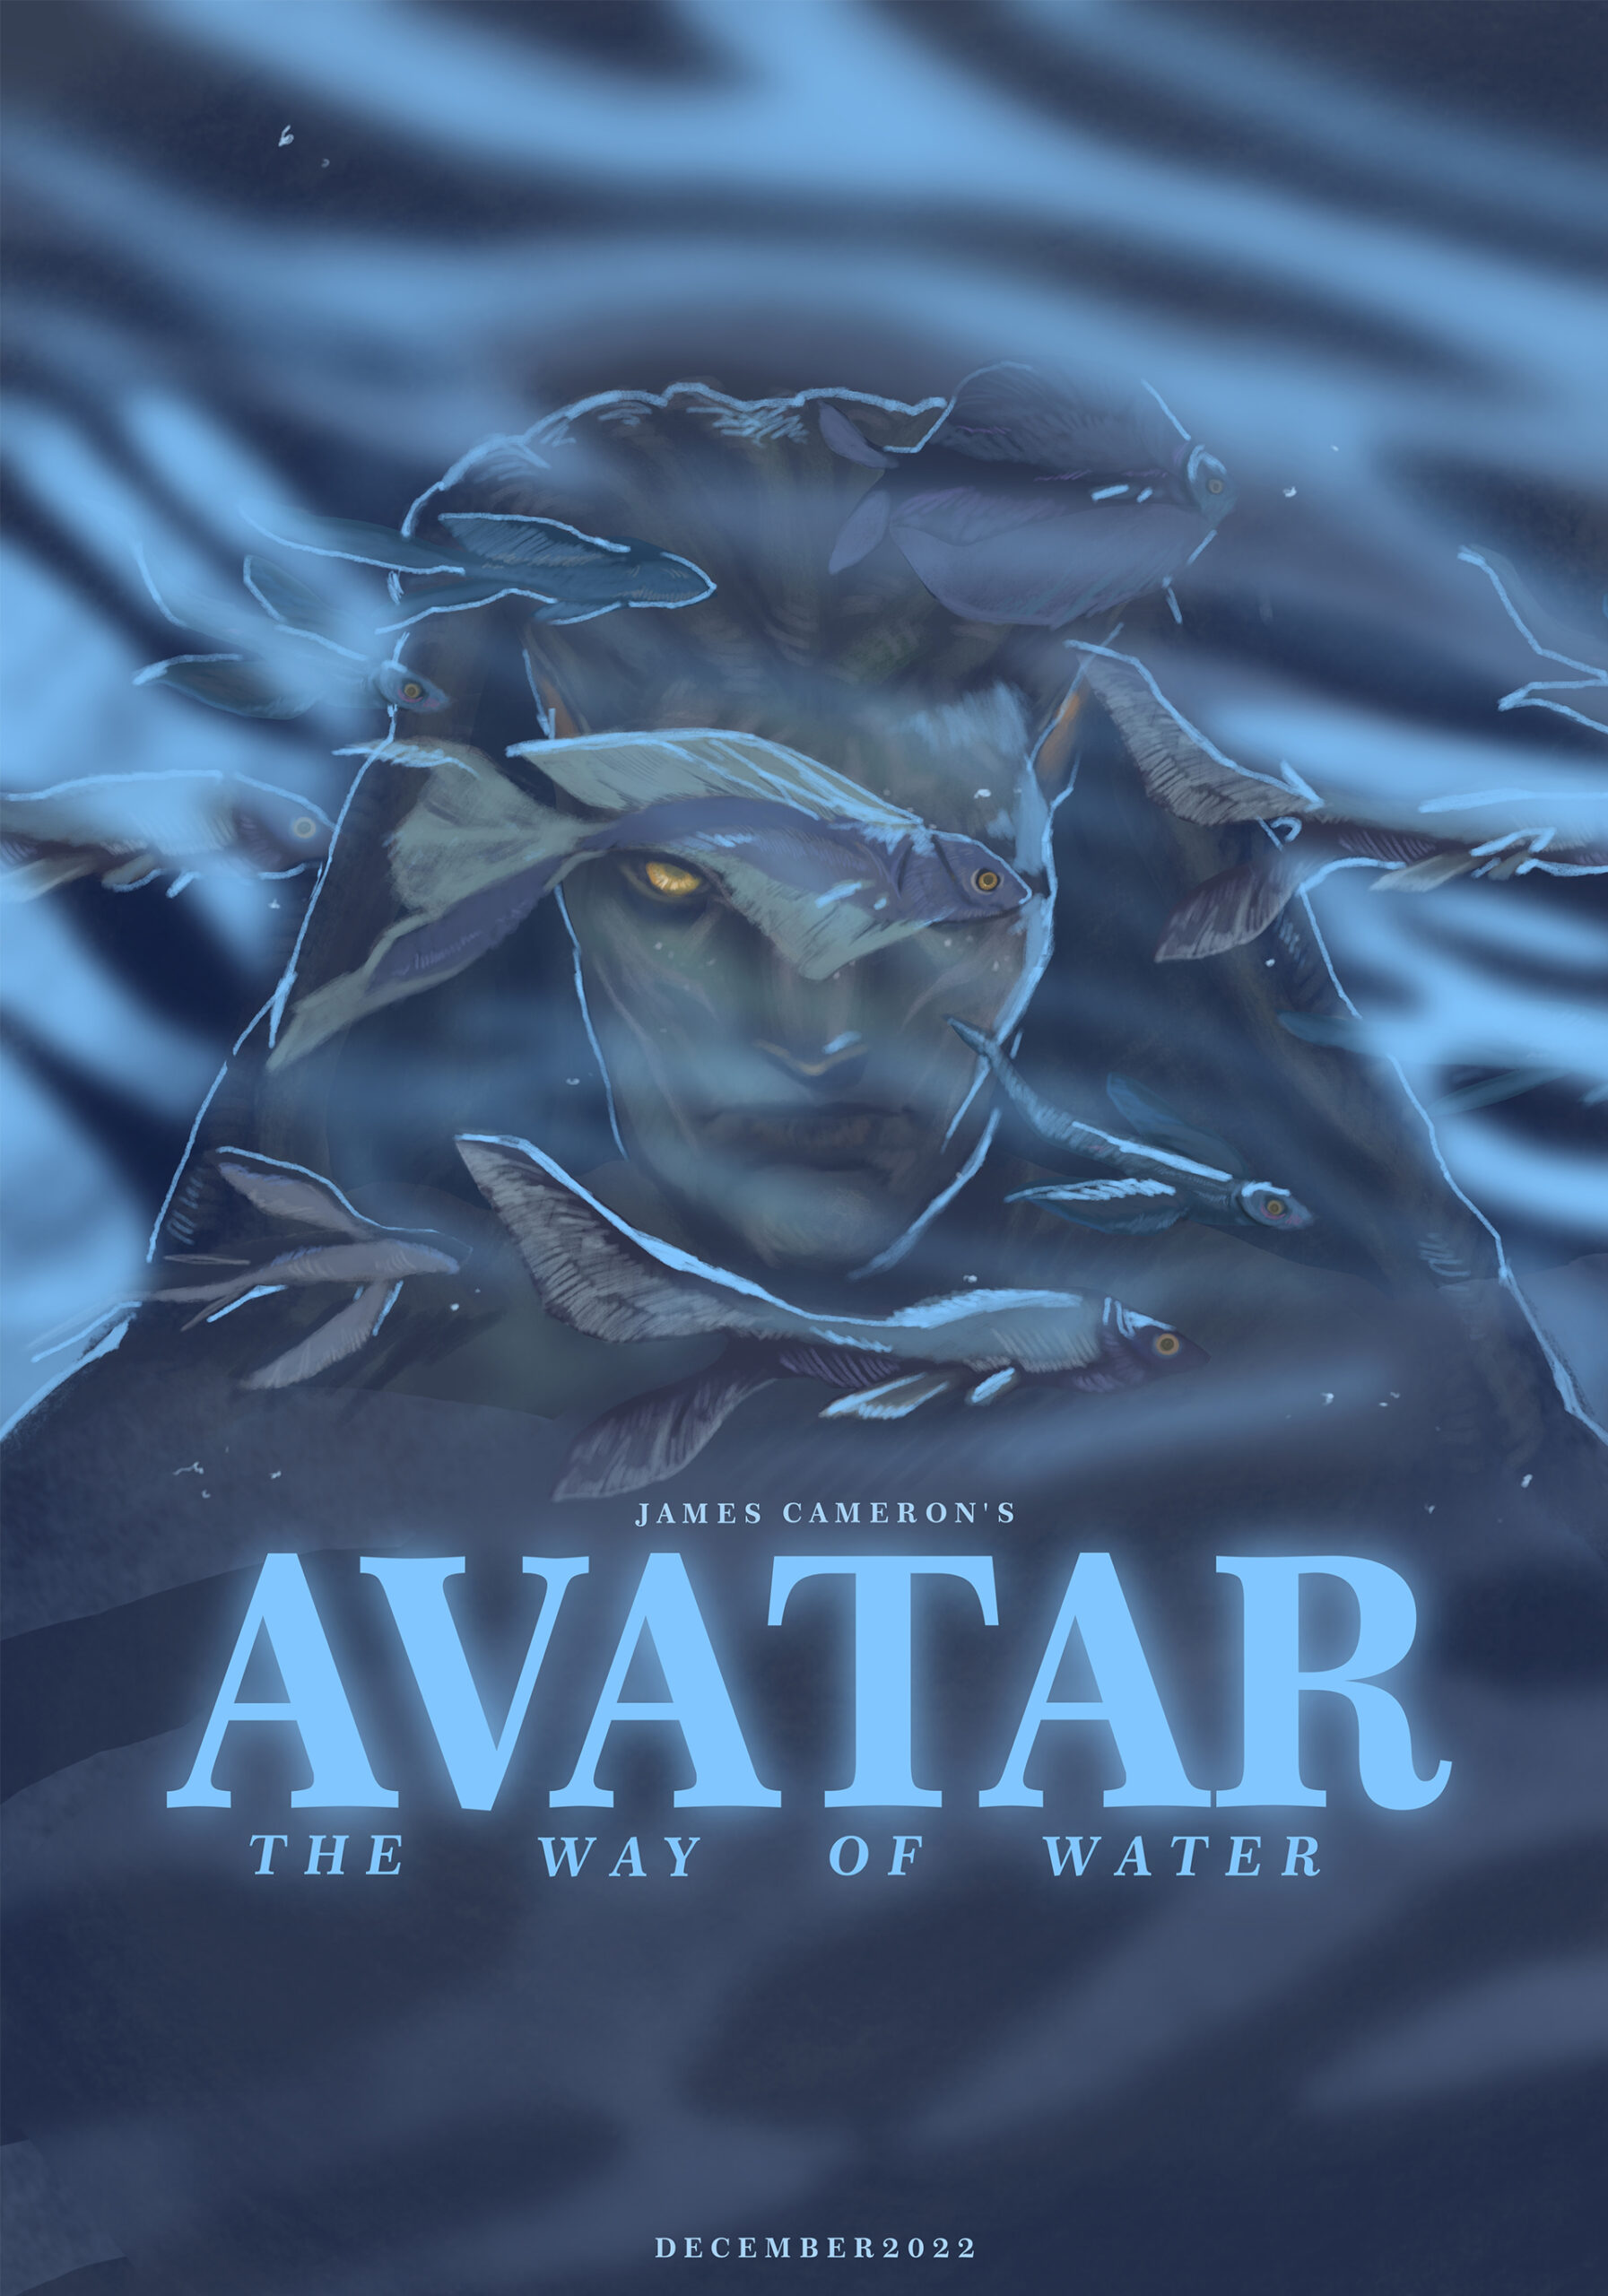 Plakat filmowy w błękitach. Przedstawiający postać Avatara z filmu oraz ryby w kompozycji horyzontalnej.